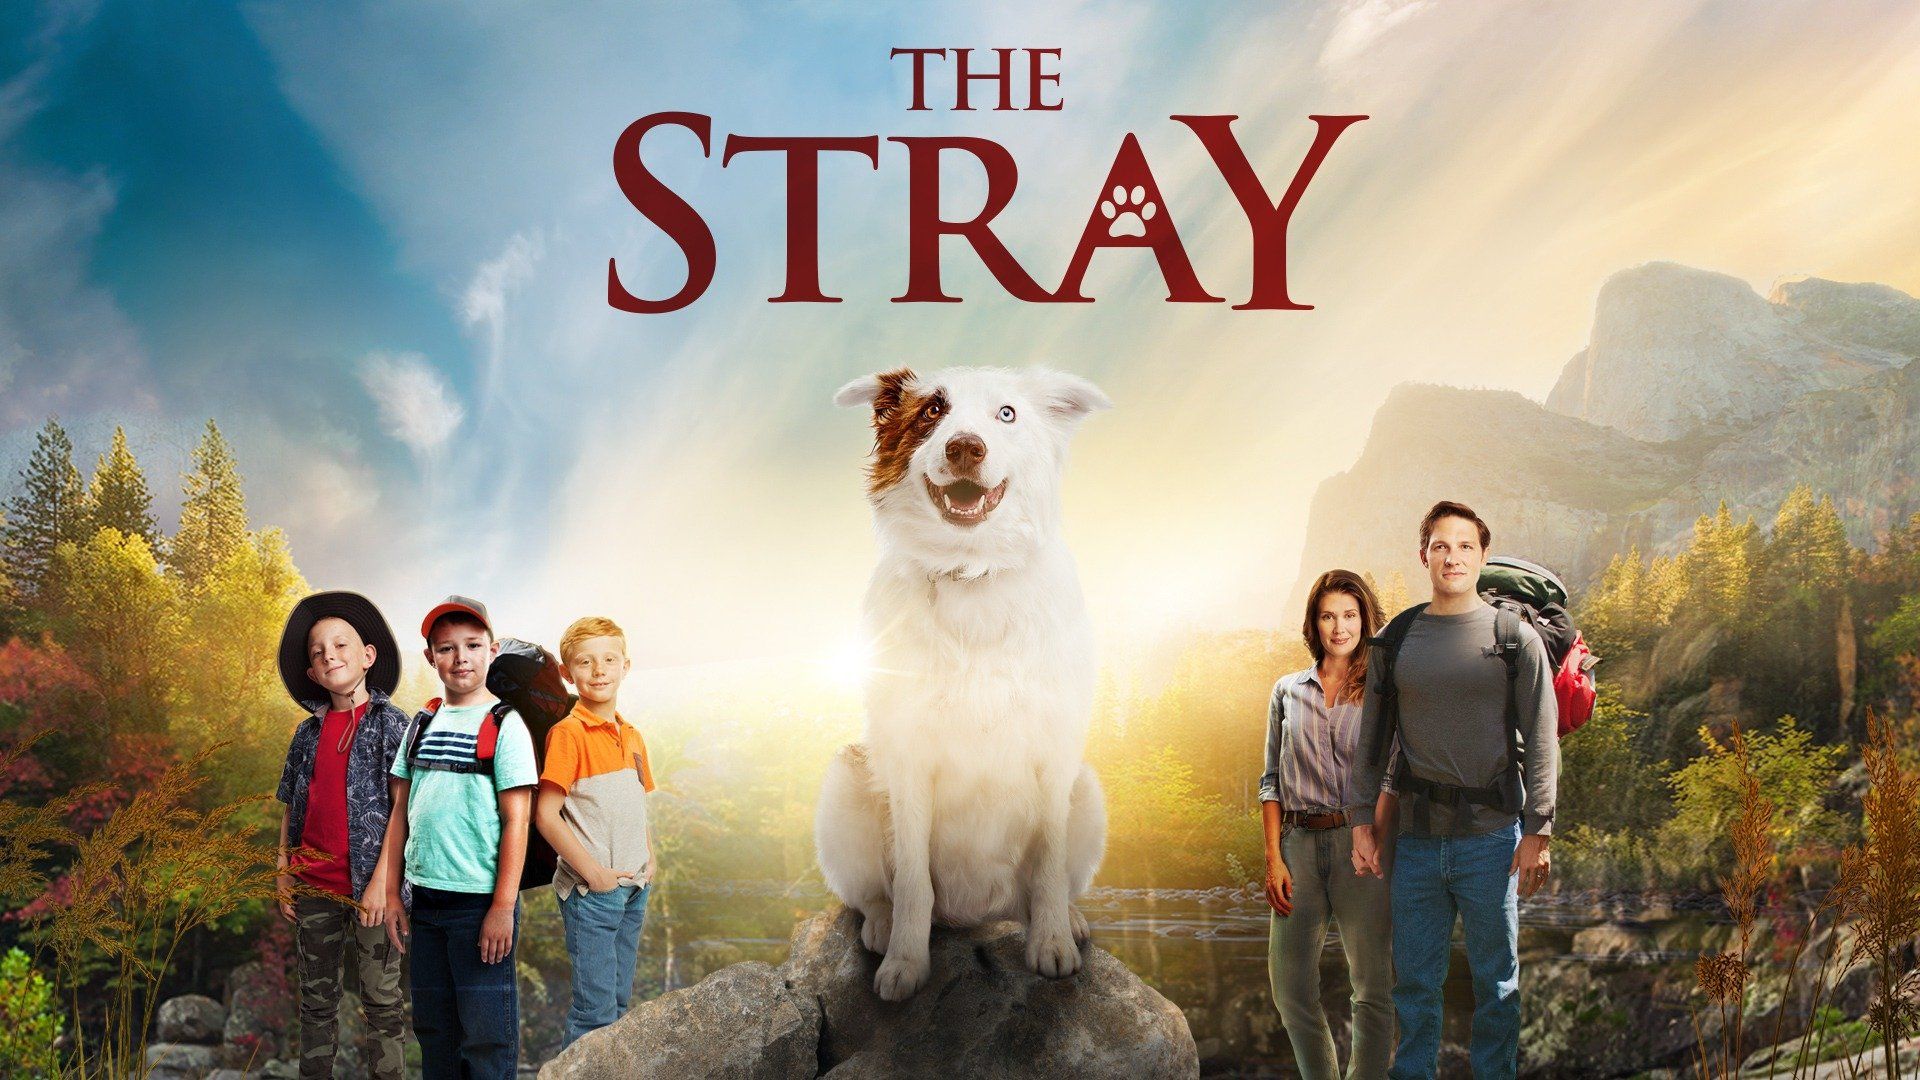 Watch The Stray (2017) Full Movie Online - Plex